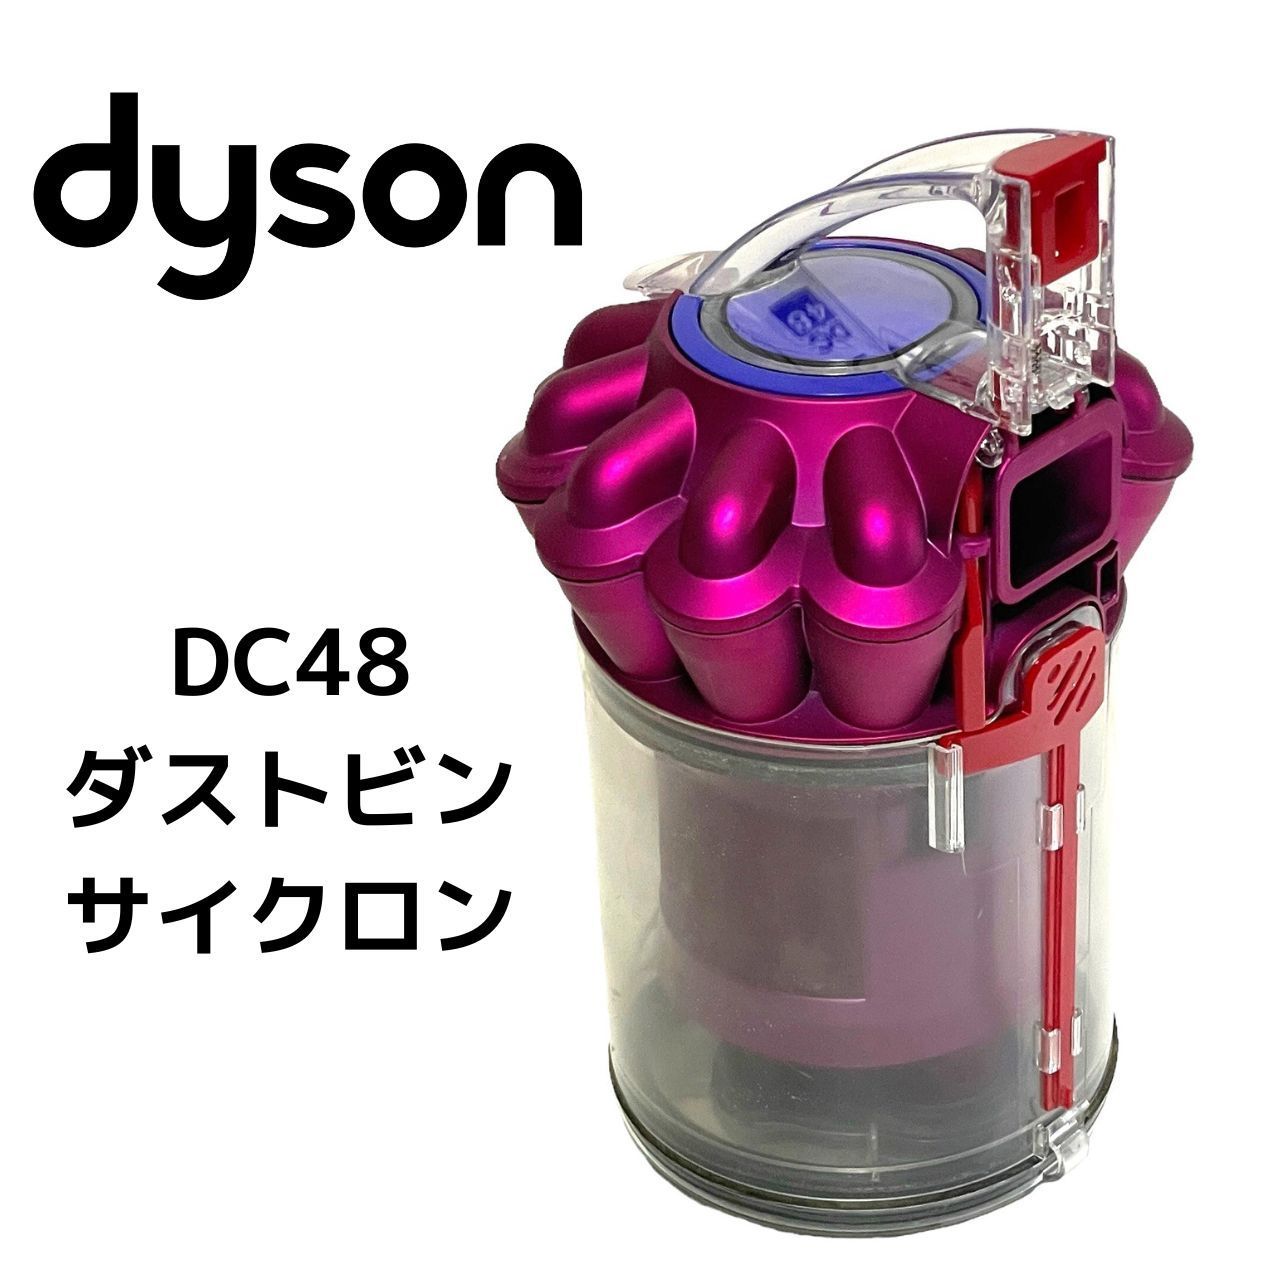 生活家電ダイソン DC48 サイクロン部クリーニング済み - mirabellor.com